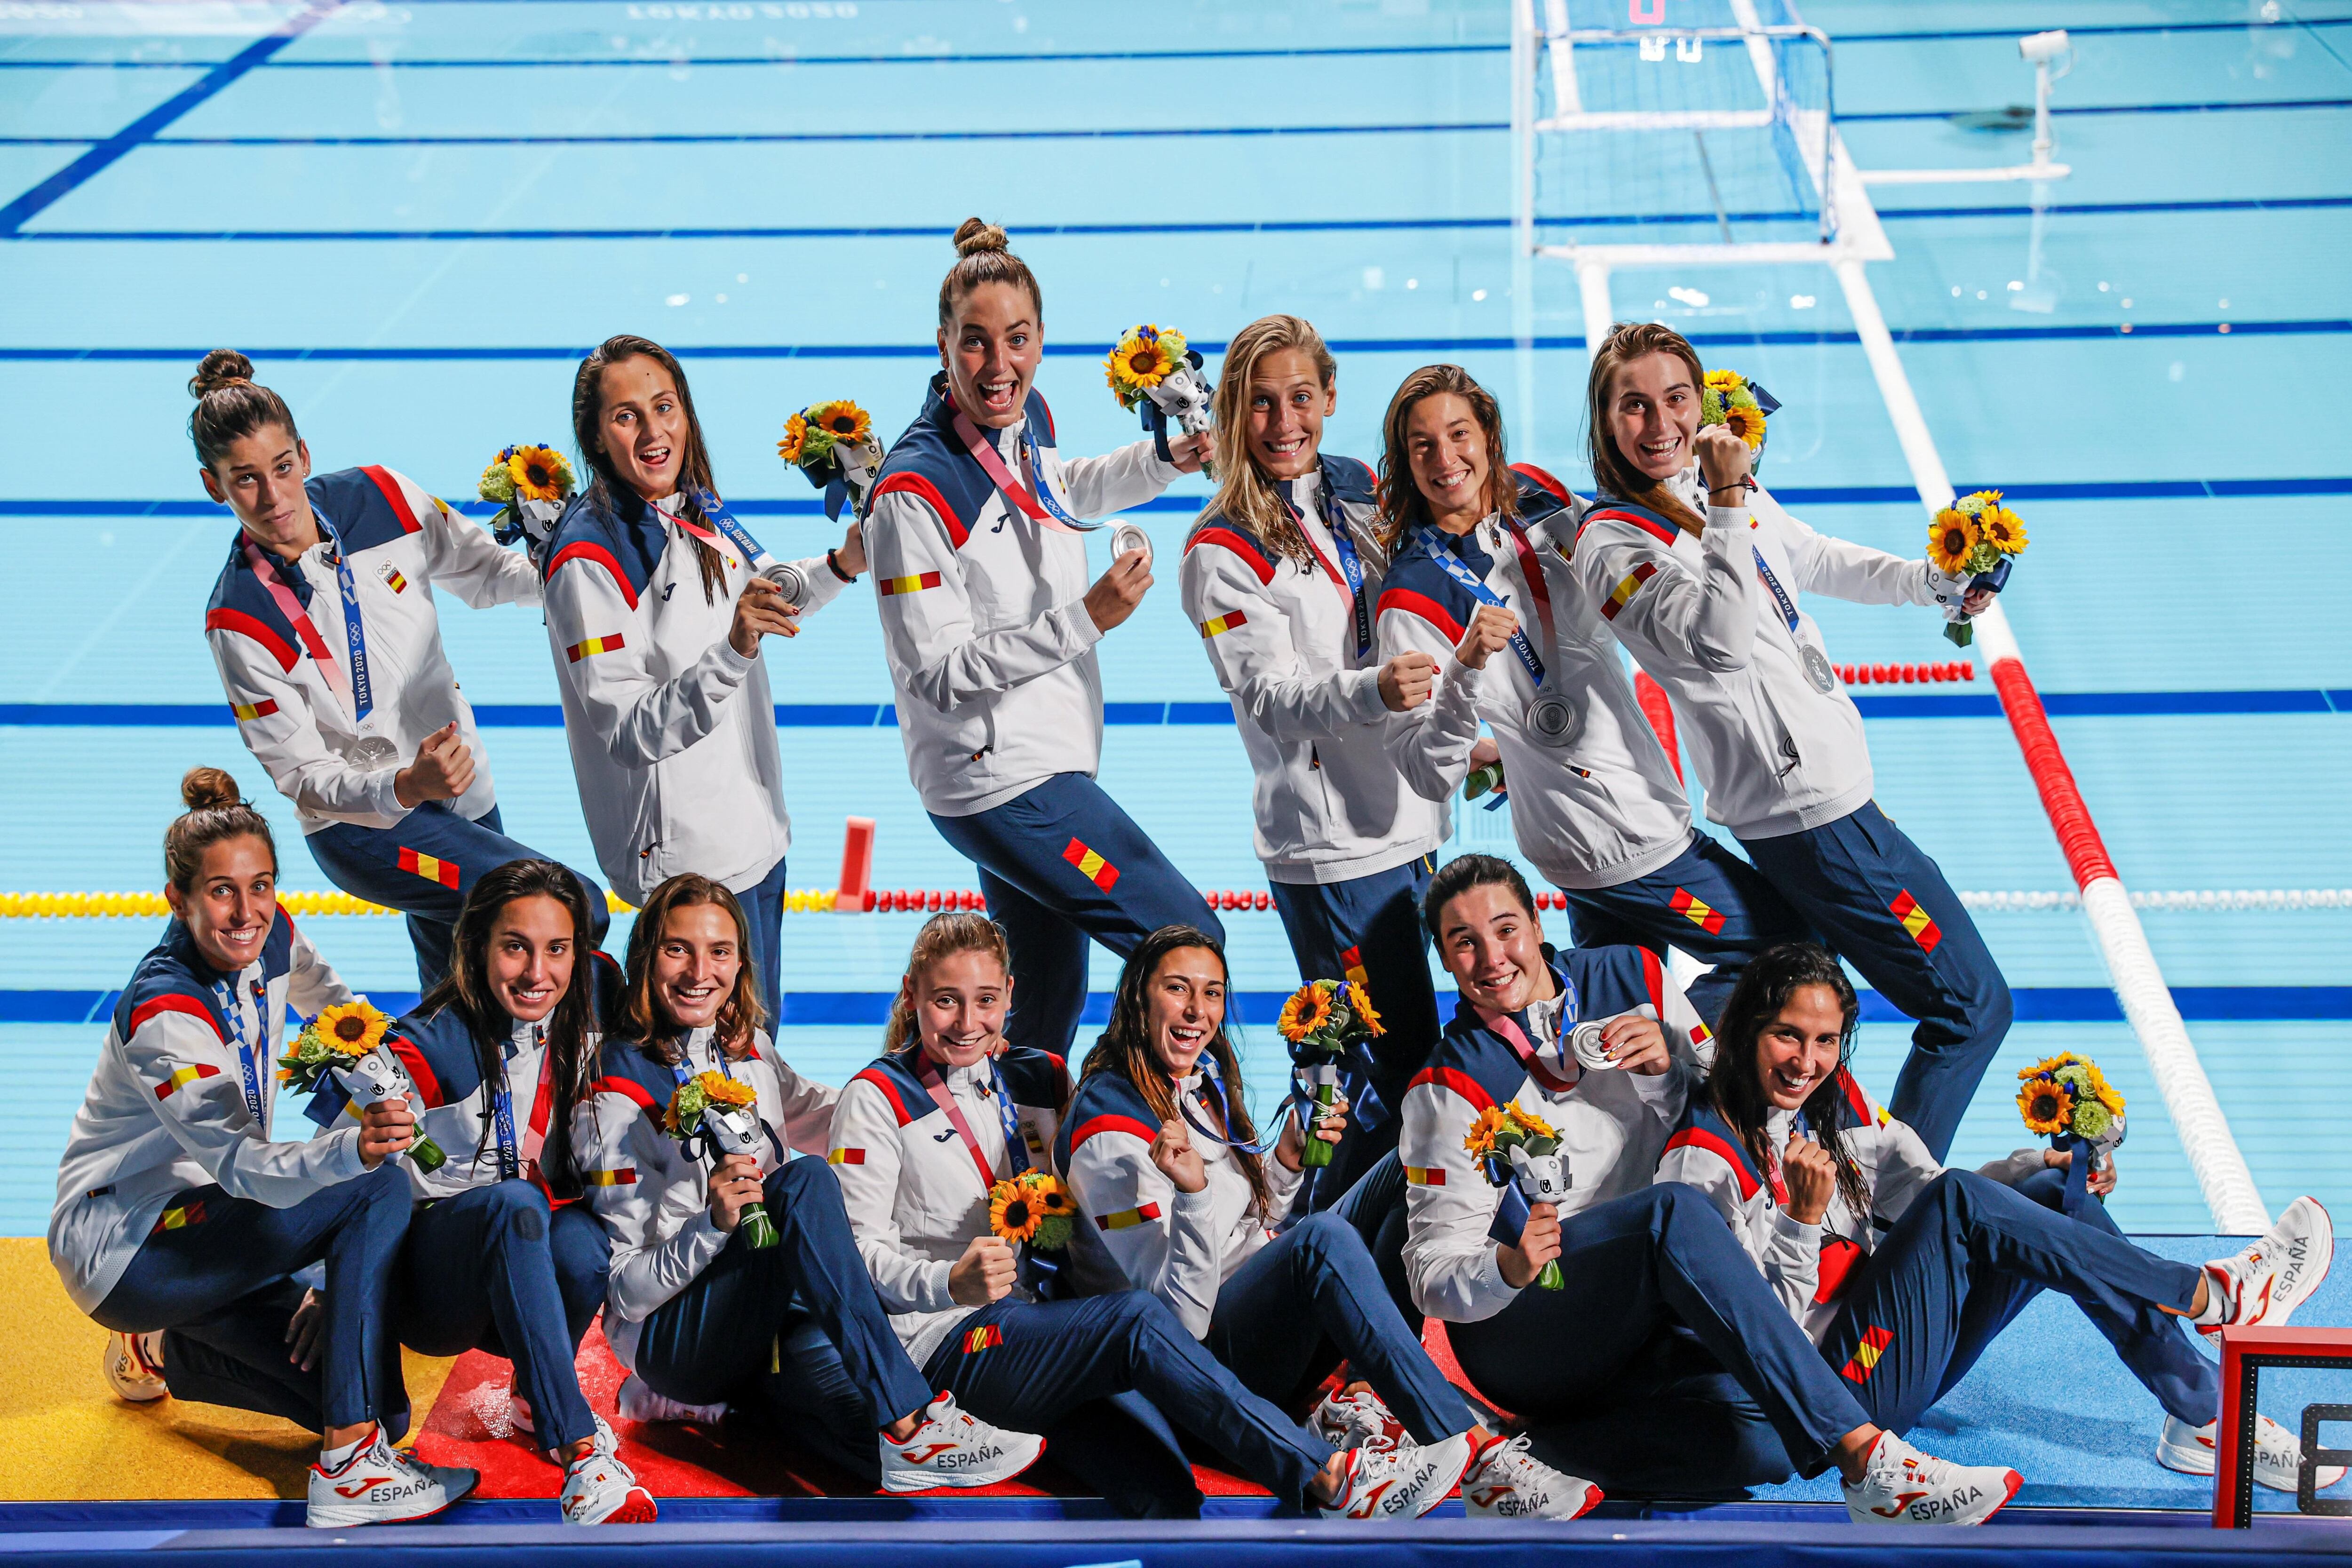 Las jugadoras españolas de waterpolo femenino celebran tras conseguir la medalla de plata durante los Juegos Olímpicos de Tokio 2020 este sábado en el Centro de Waterpolo de Tatsumi en Tokio (Japón). EFE/ Lavandeira Jr